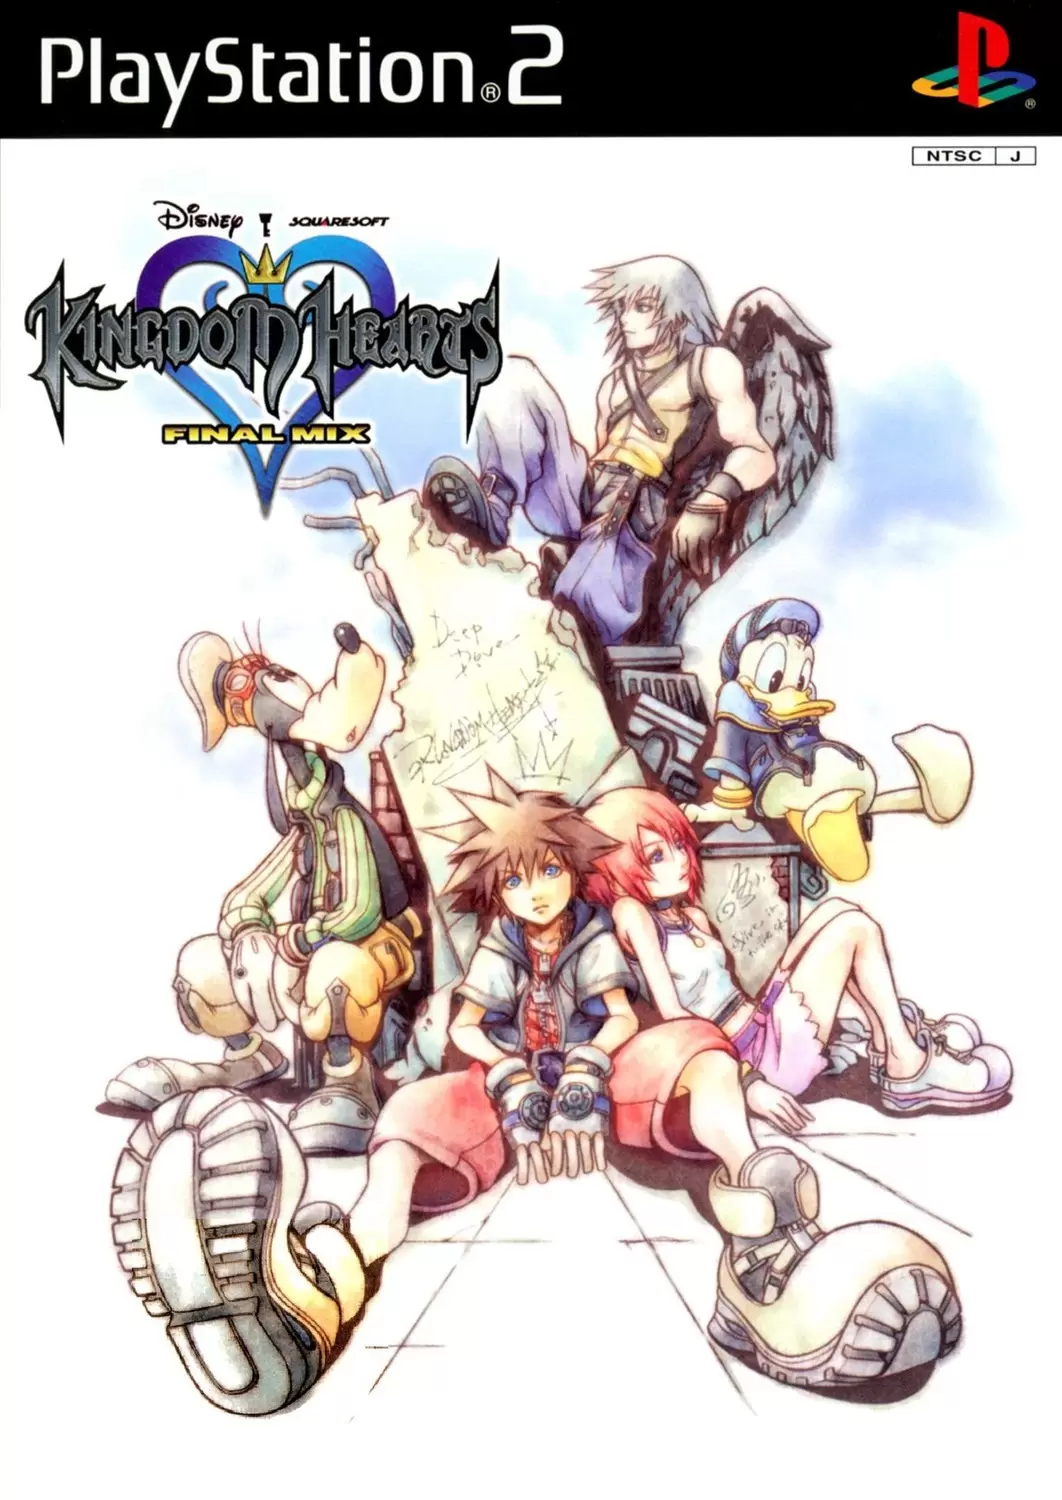 PS2 Games - Kingdom Hearts: Final Mix